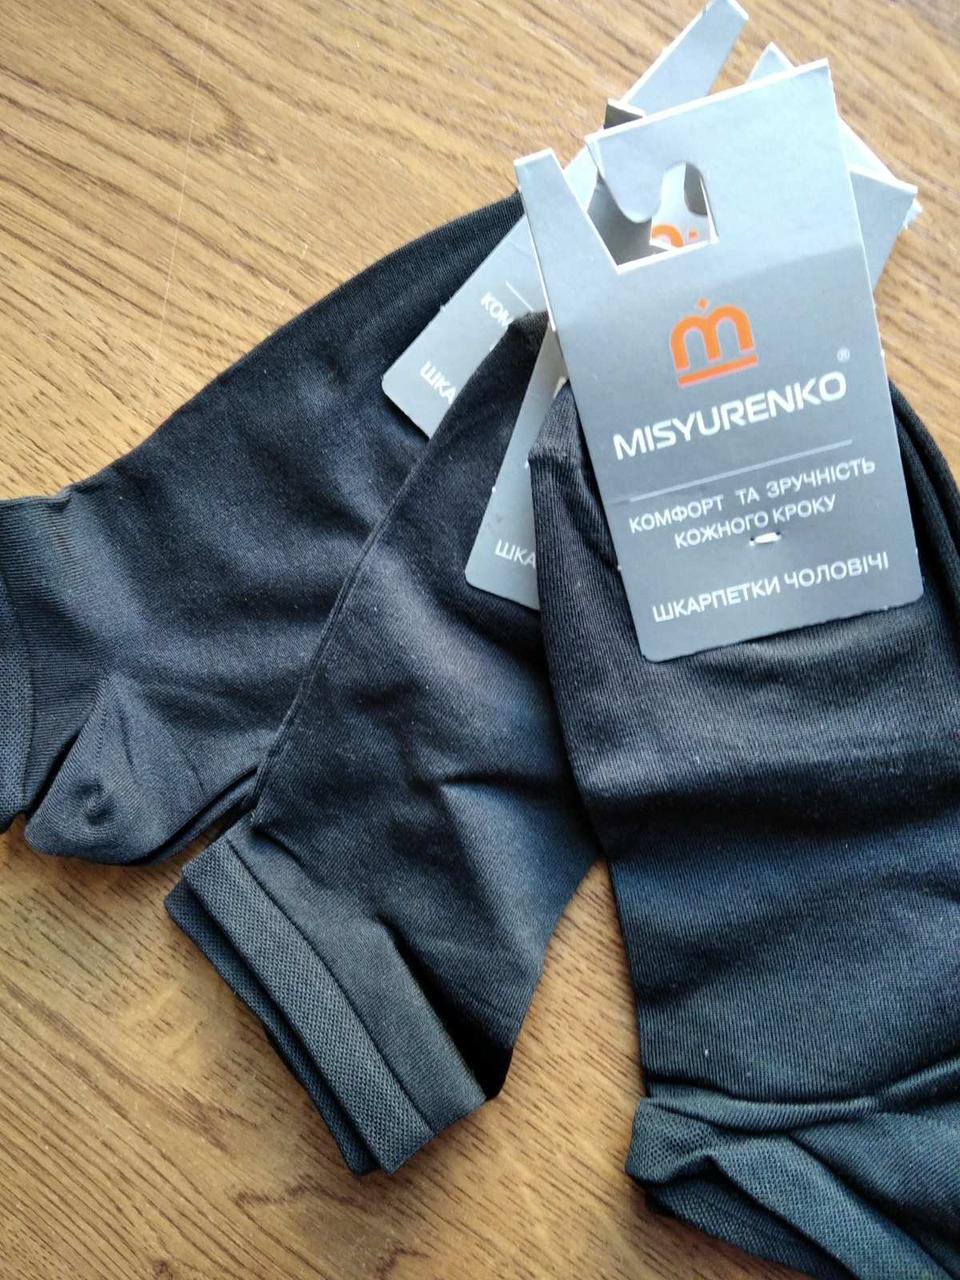 Чорні короткі чоловічі шкарпетки «MISYURENKO»